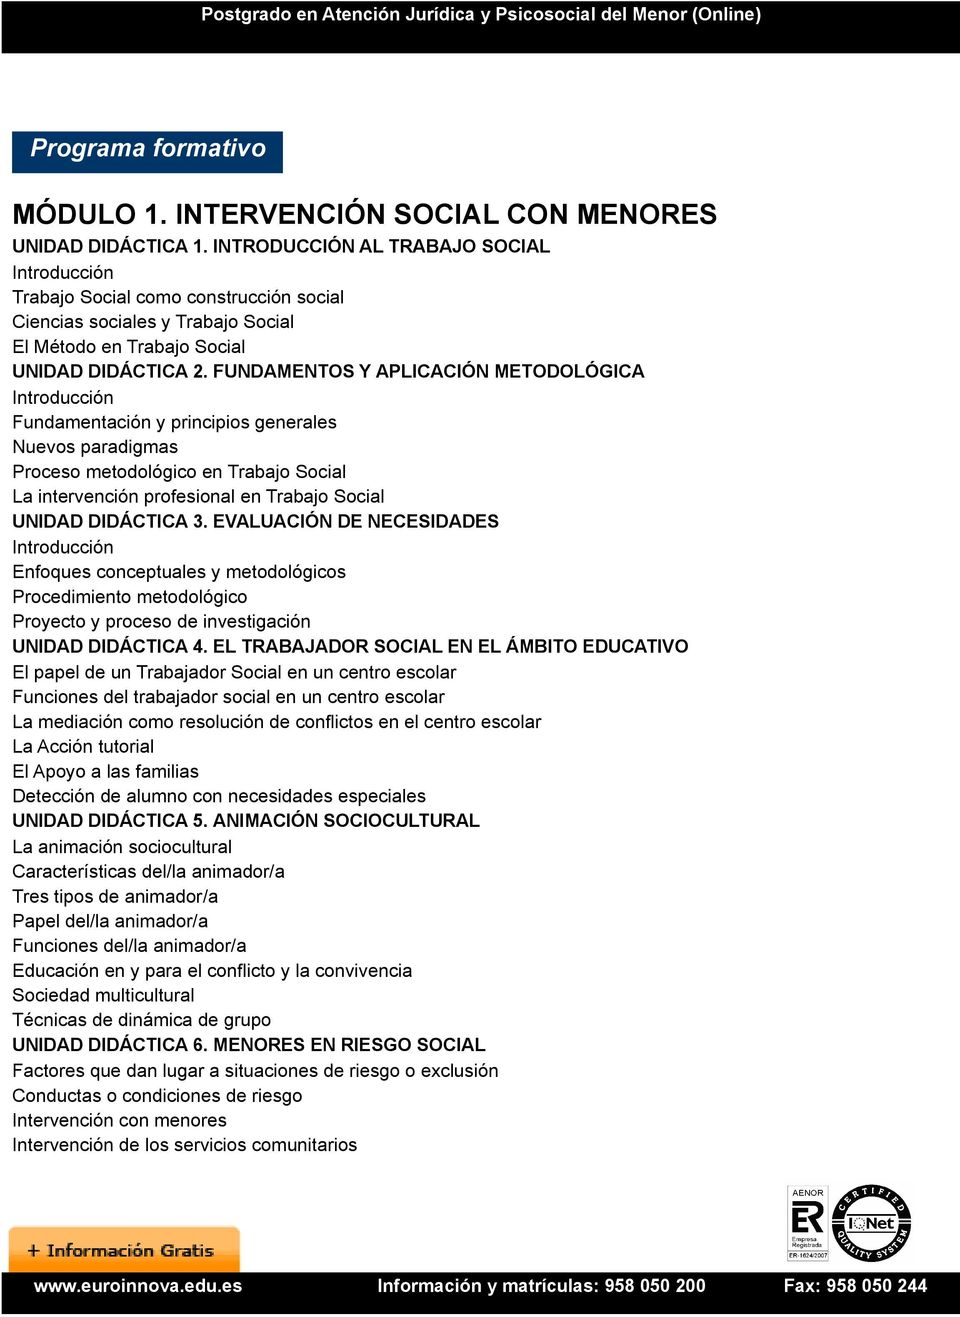 FUNDAMENTOS Y APLICACIÓN METODOLÓGICA Fundamentación y principios generales Nuevos paradigmas Proceso metodológico en Trabajo Social La intervención profesional en Trabajo Social UNIDAD DIDÁCTICA 3.